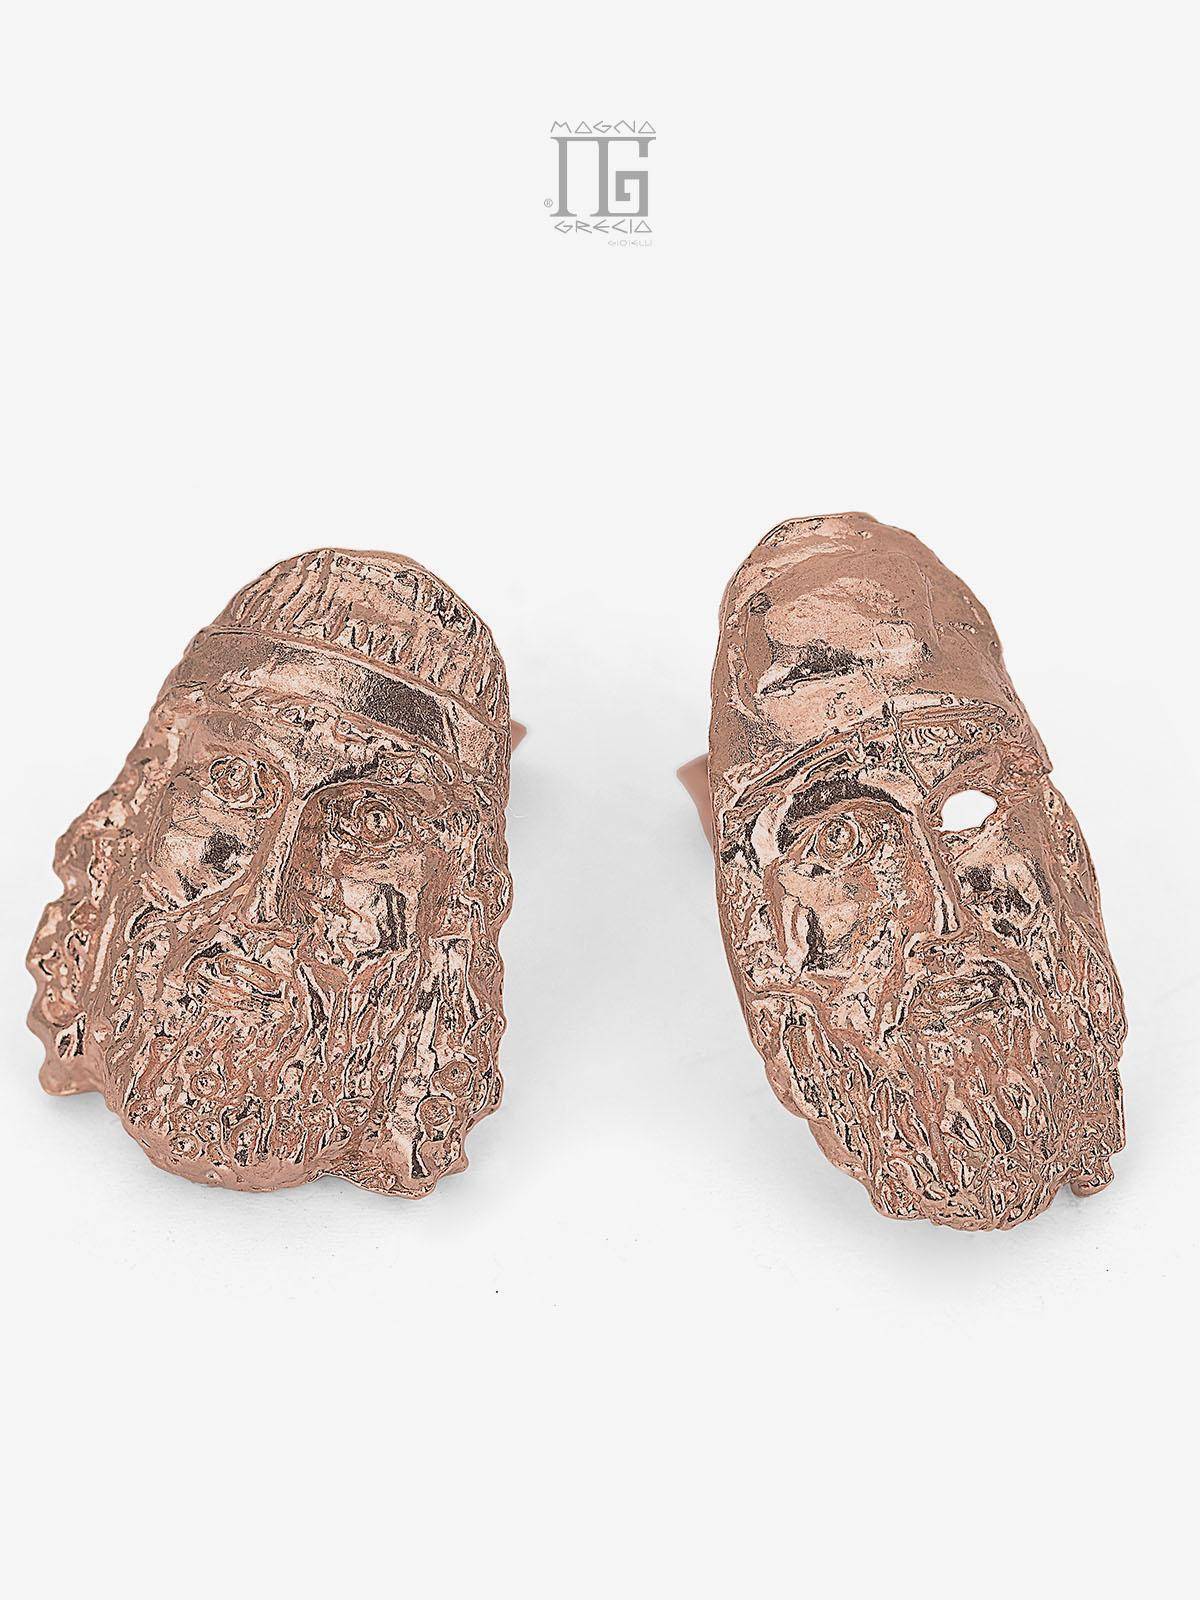 Orecchini in Argento con raffigurato il volto dei Bronzi di Riace Cod. MGK 4117 V